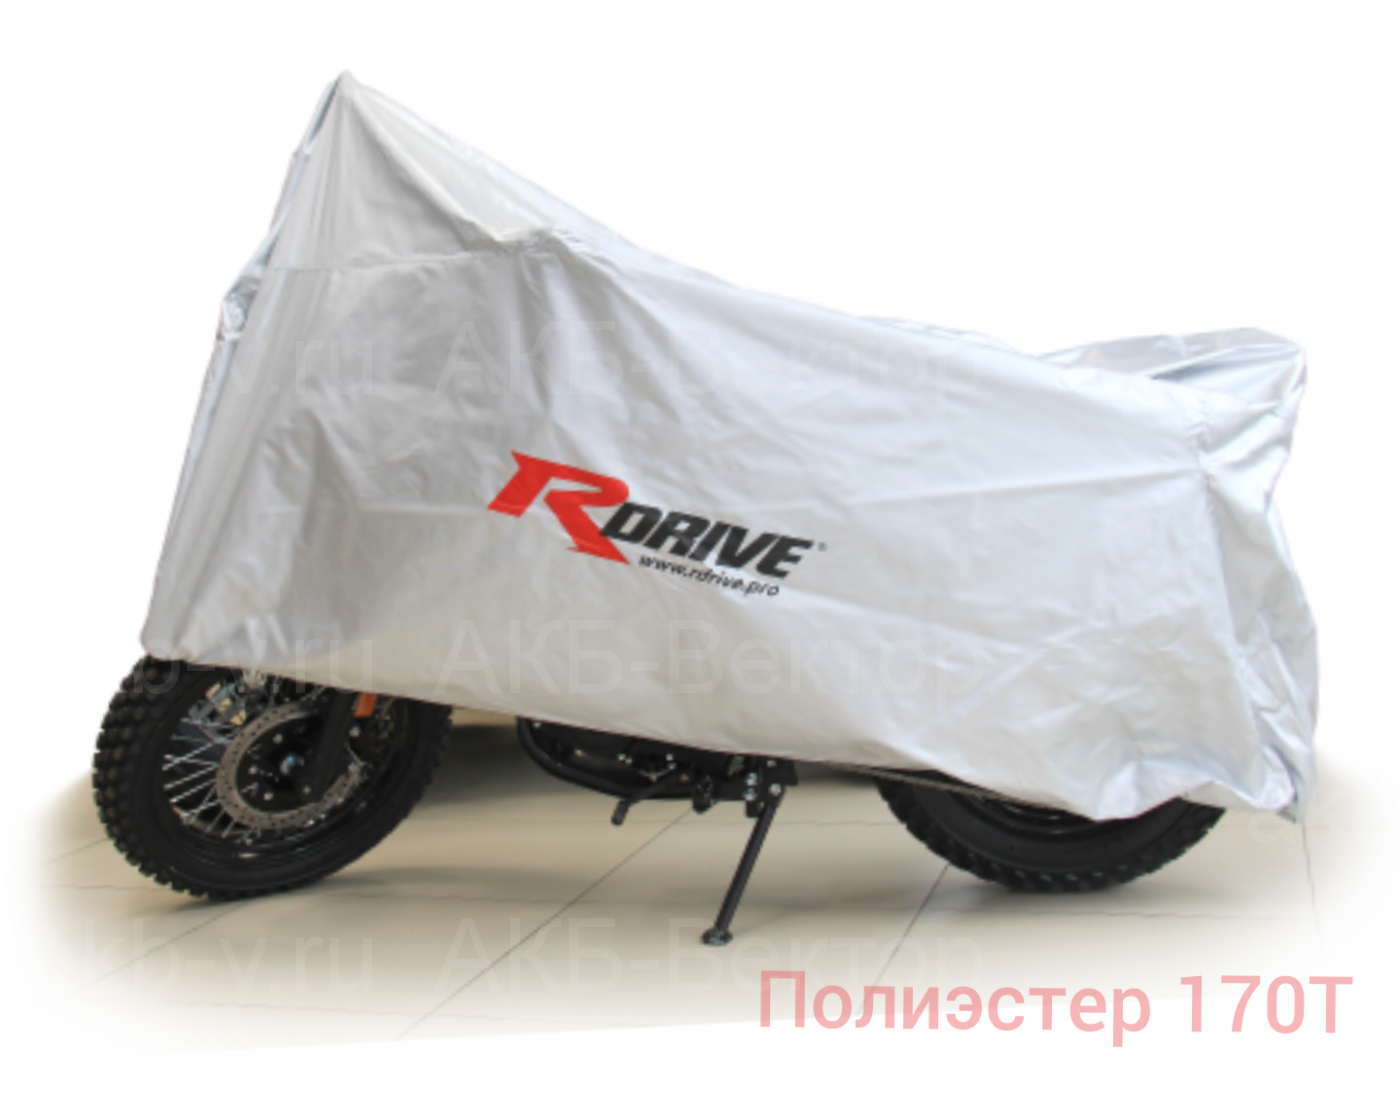 Тент-Чехол для мотоцикла RDrive Extra (полиэстер 170Т (XL)